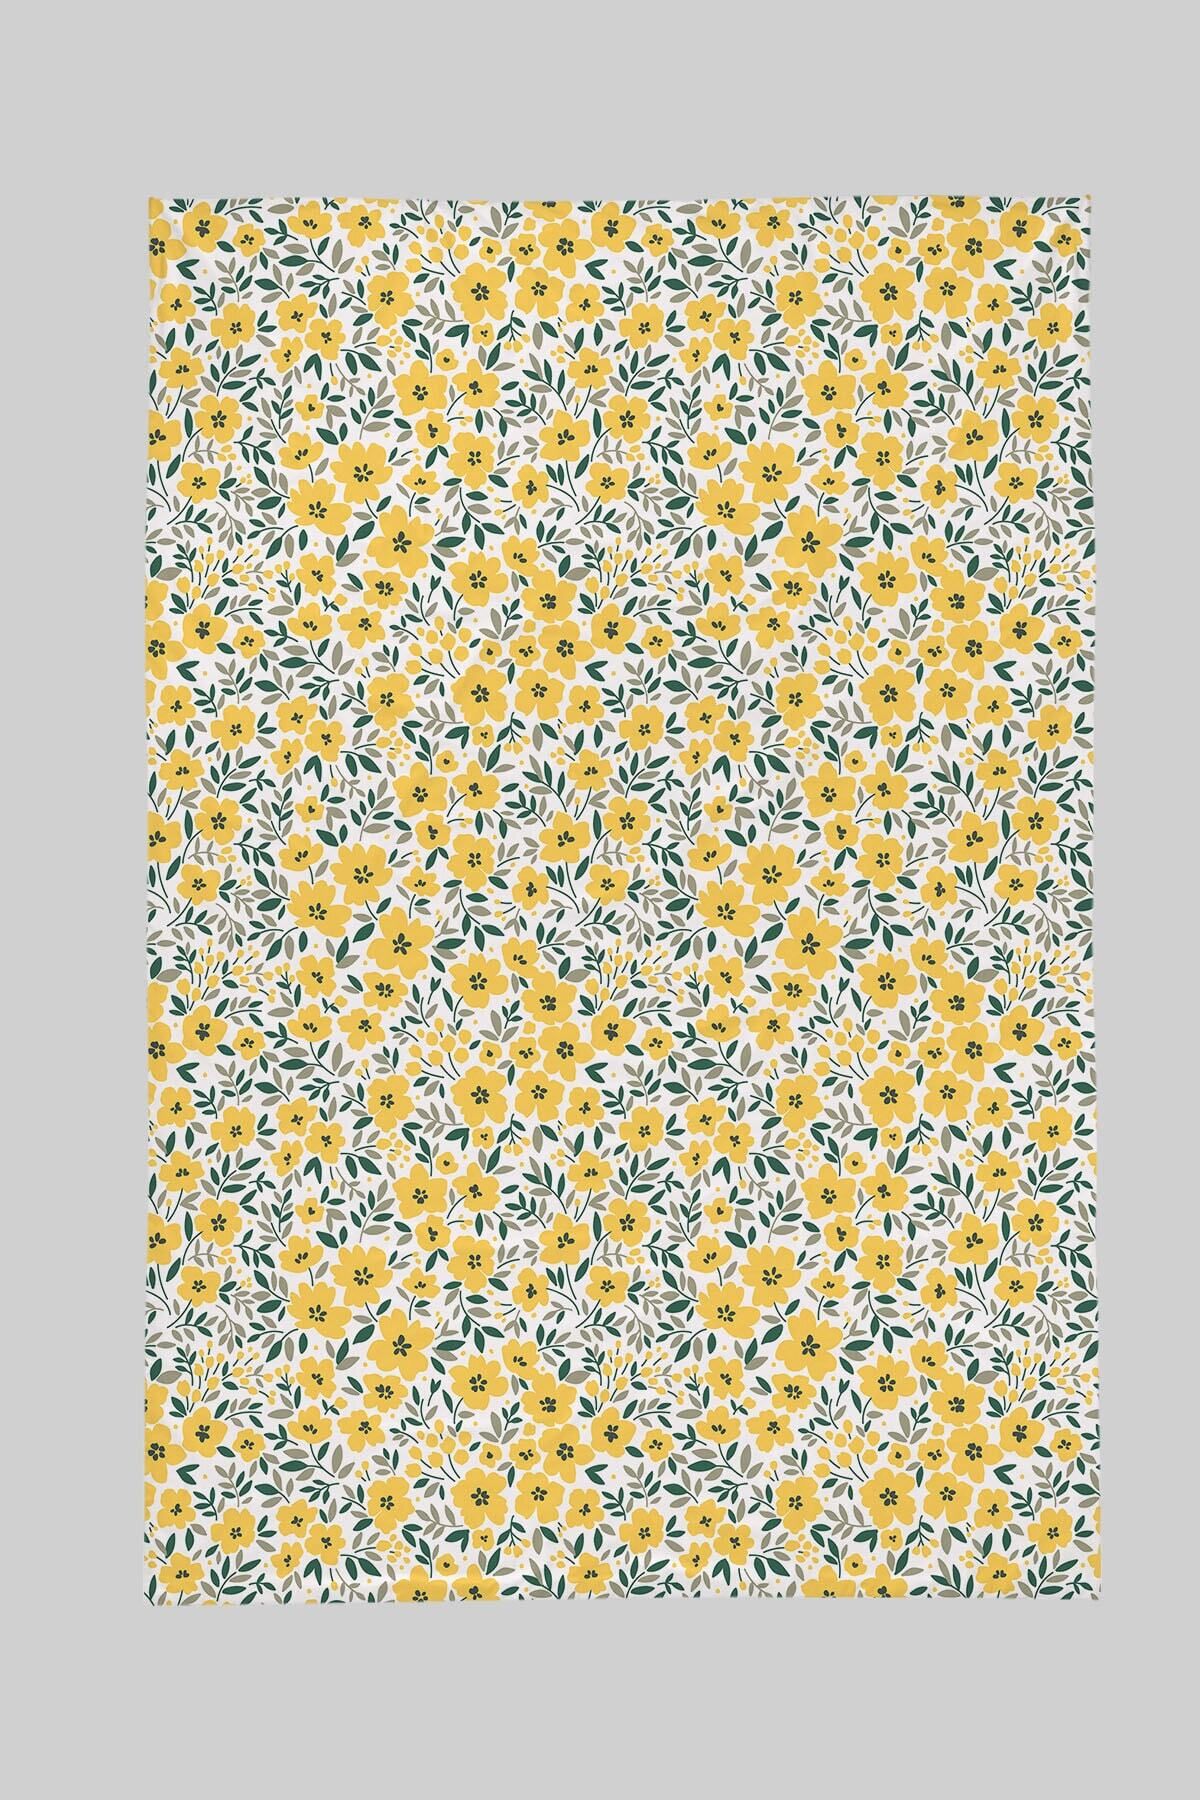 Tuğba Kuğu Baskılı Düz Çarşaf 120x180 - Iconic Serisi - Sarı Minik Çiçekler